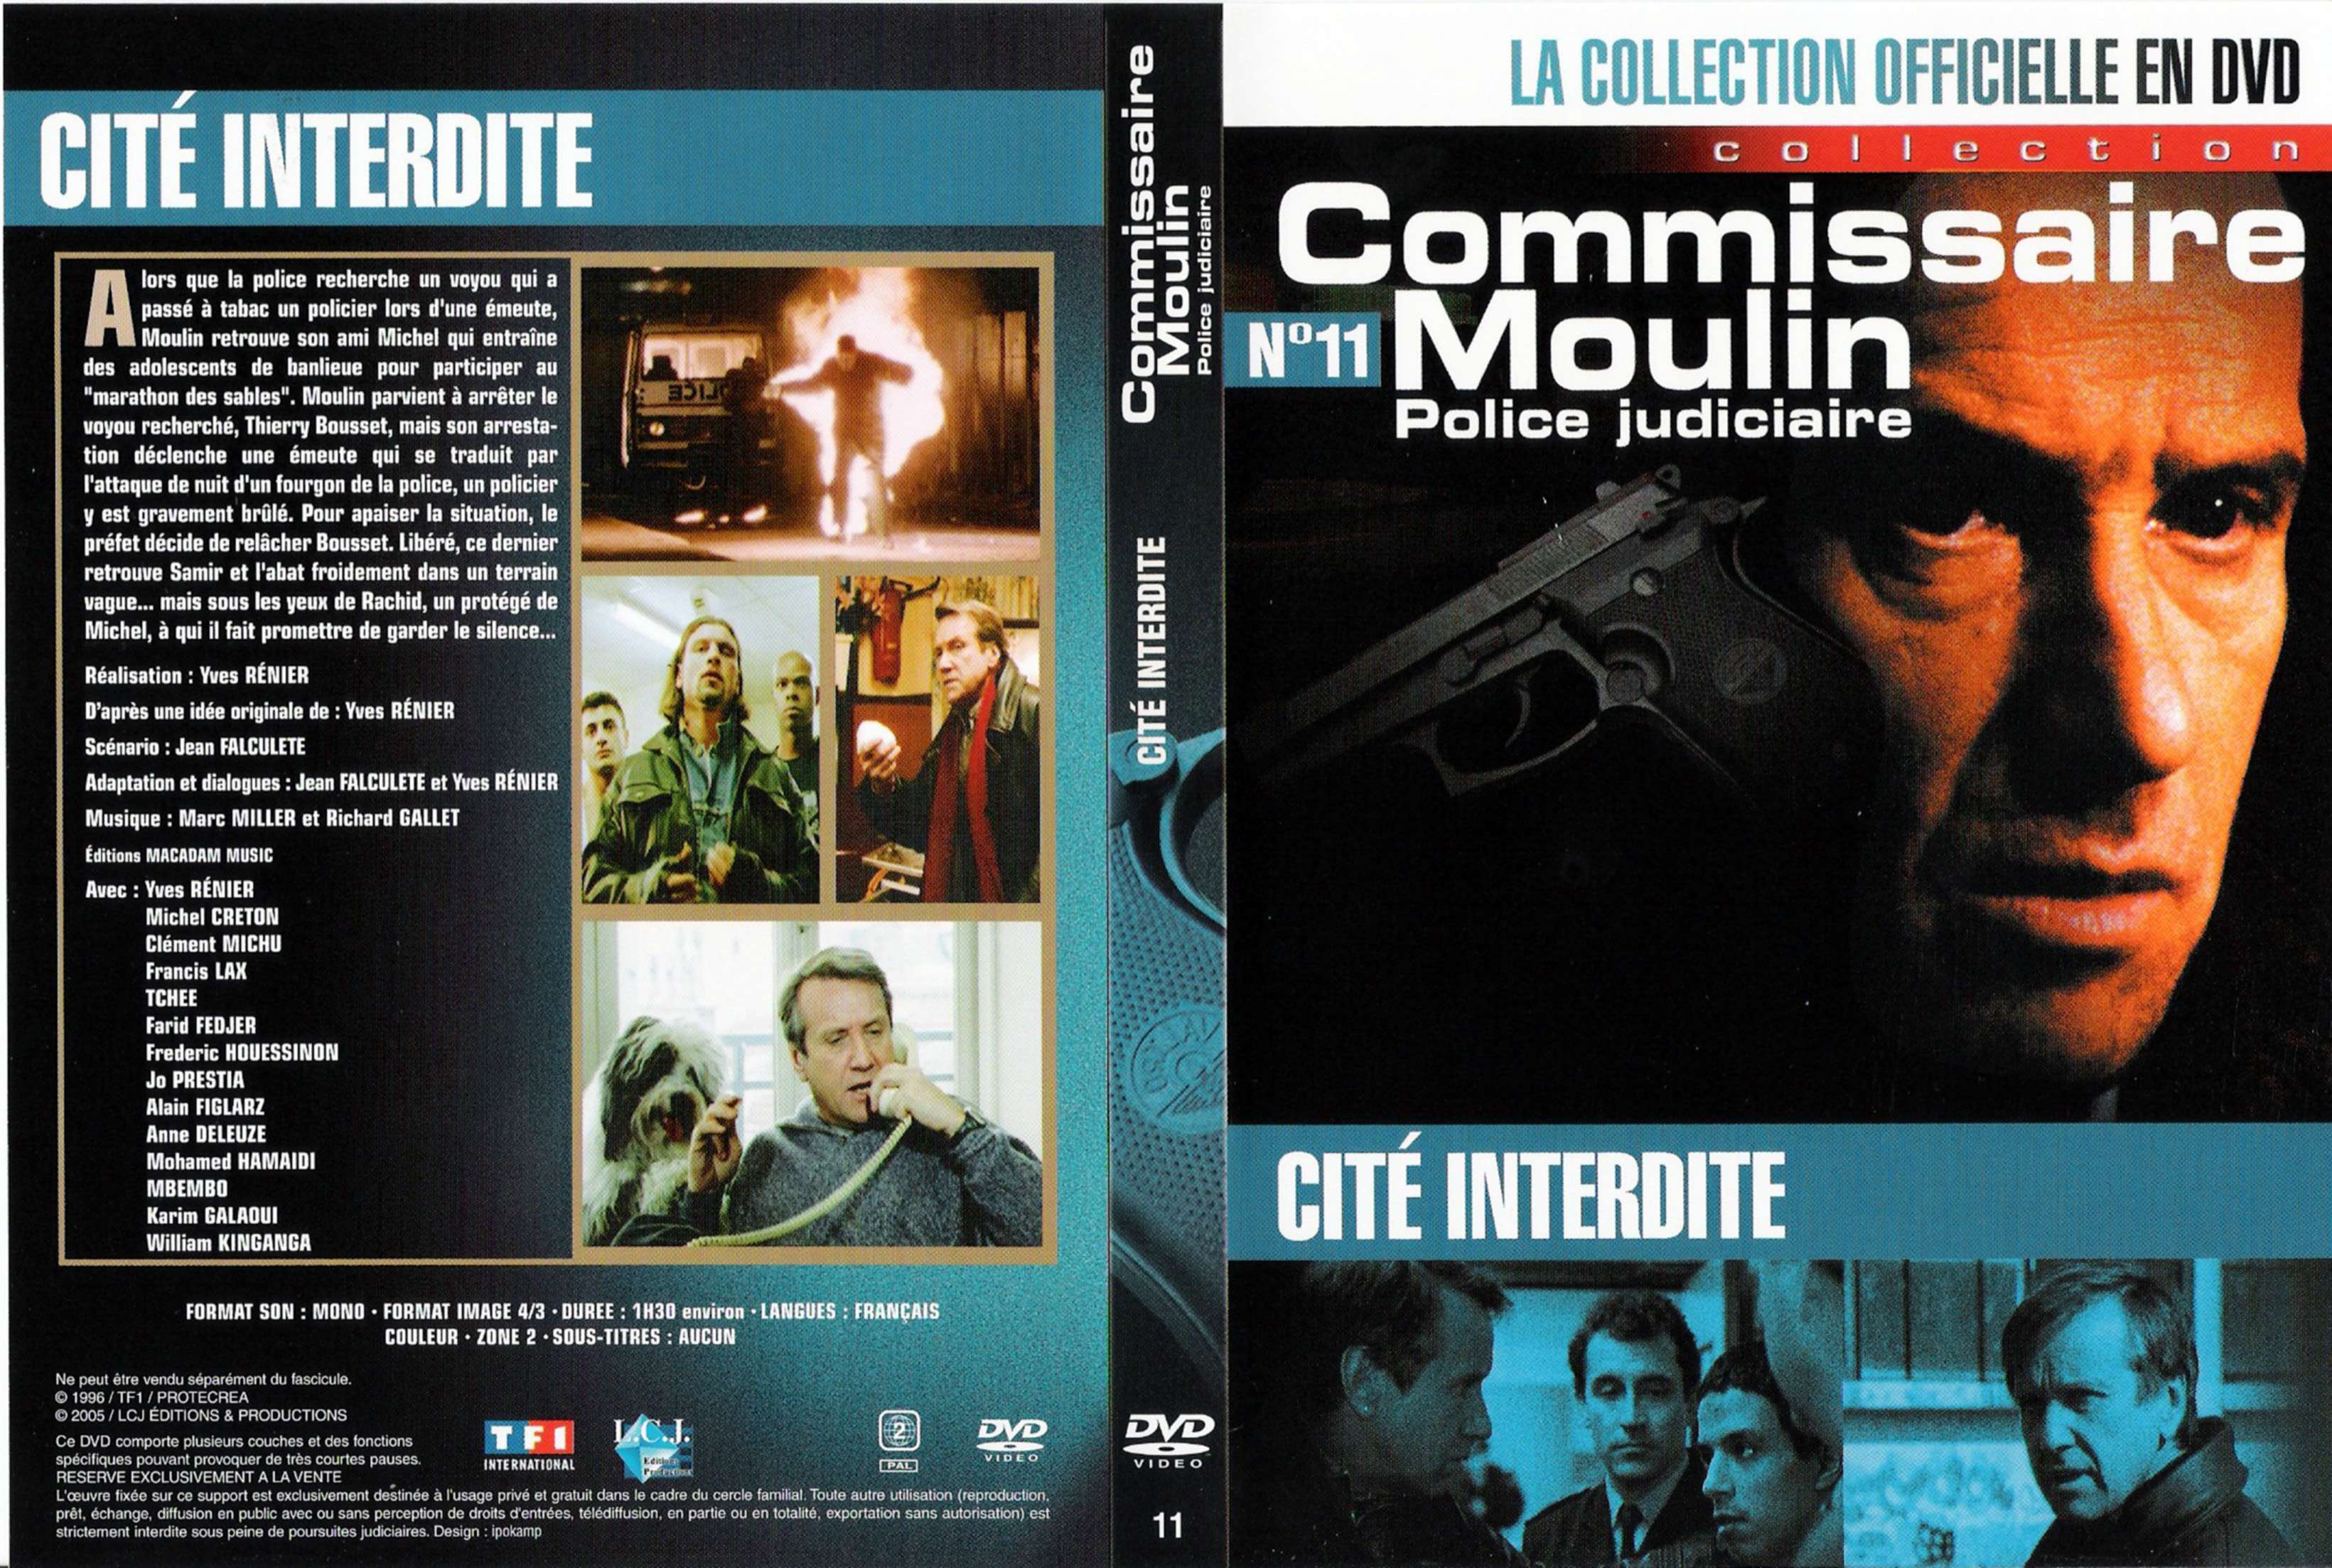 Jaquette DVD Commissaire Moulin - Cit interdite